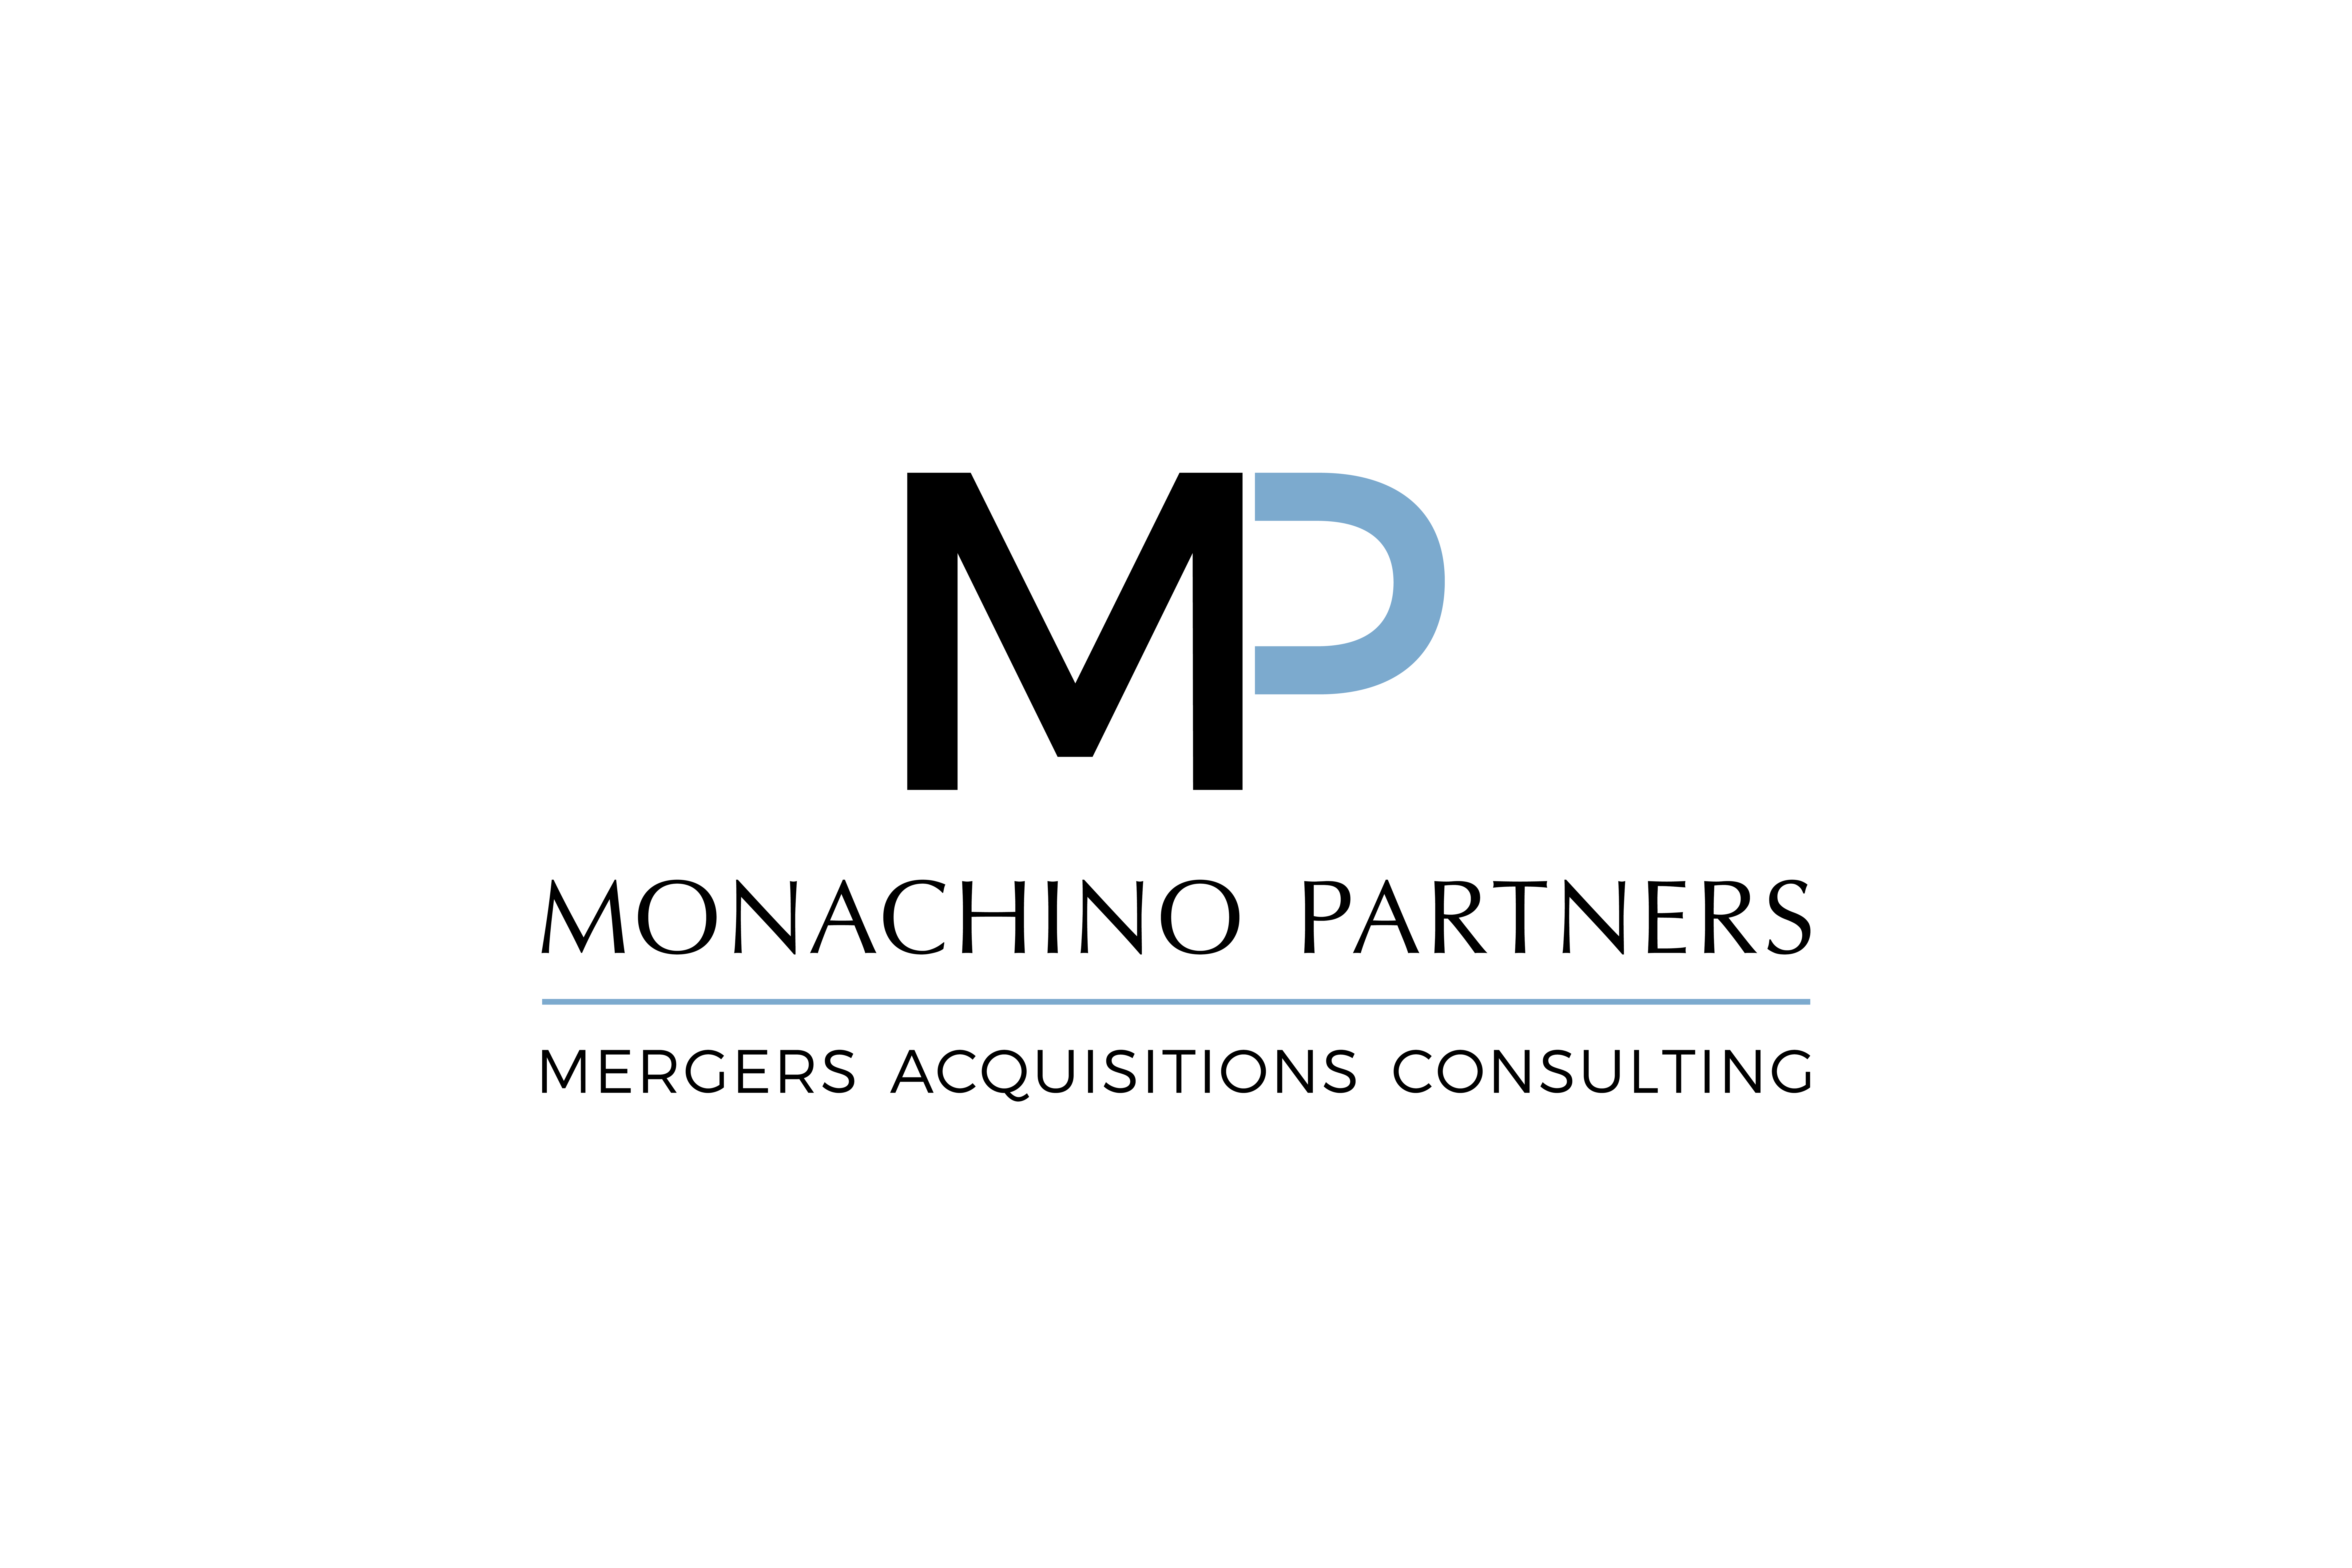 Monachino Partners